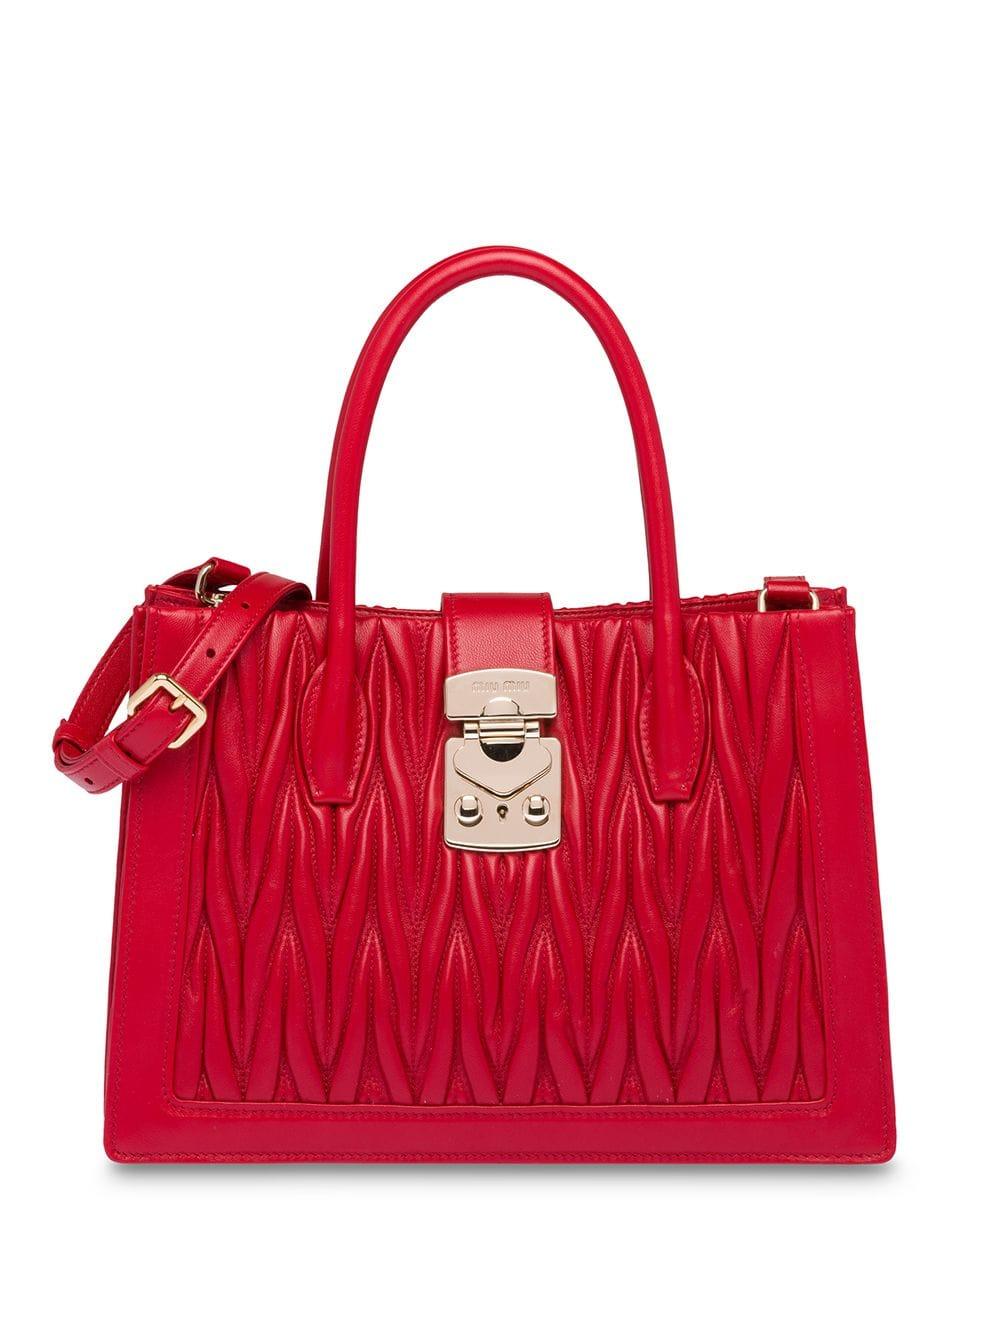 Miu Miu Miu Confidential Nappa Matelassé Handbag in Red - Lyst